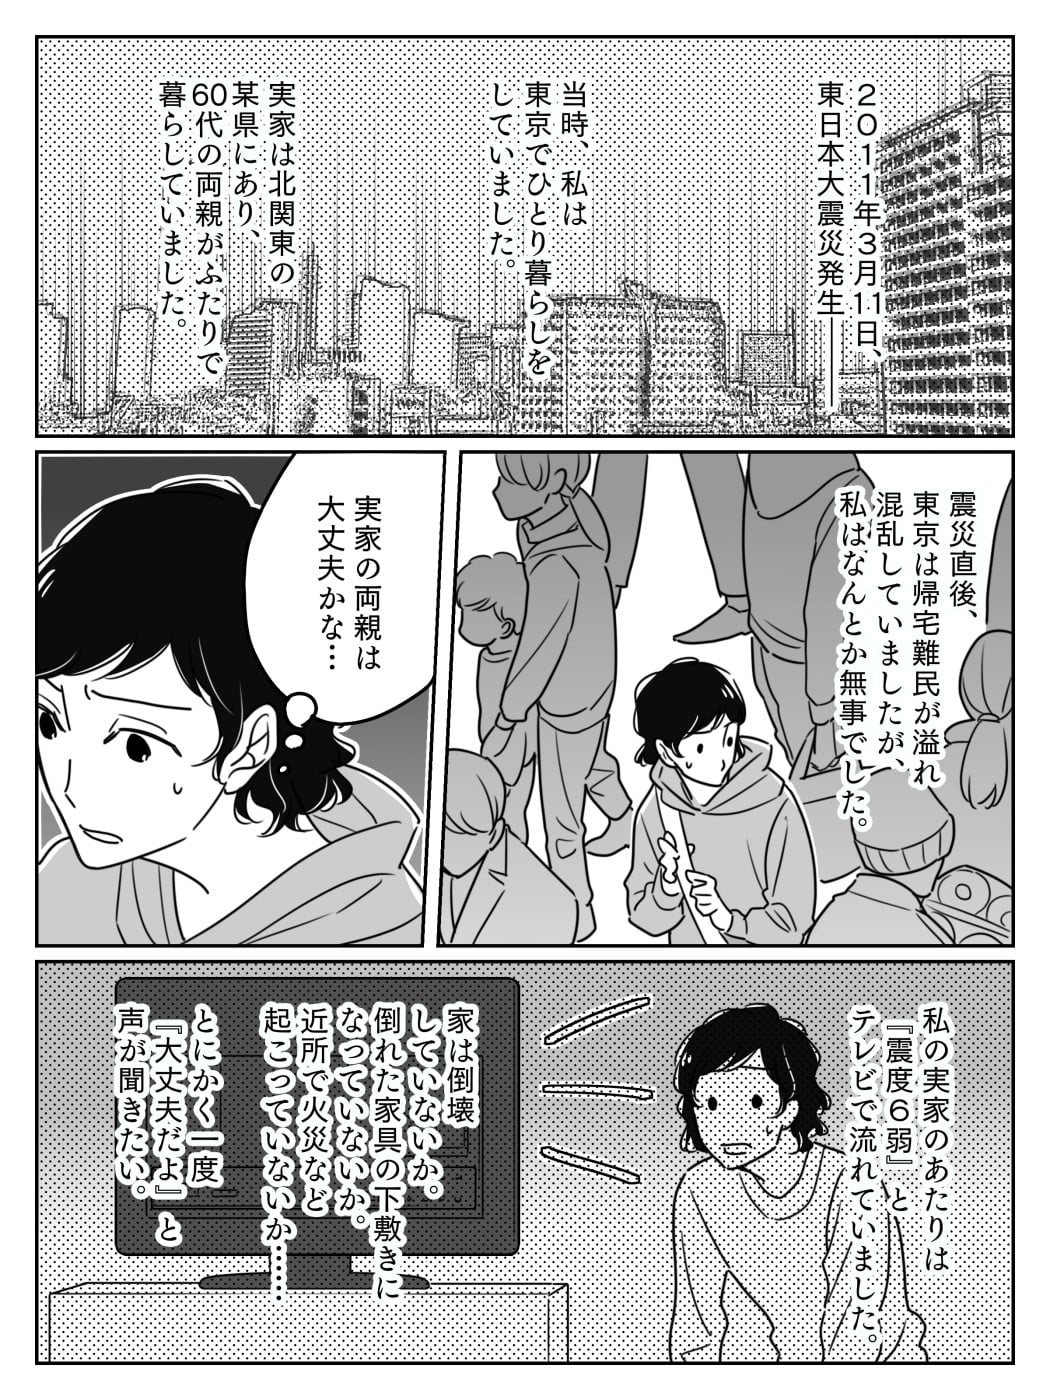 【前編】3.11東日本大震災発生…両親の安否がわからない！そんなとき役立ったのは #あれから私は